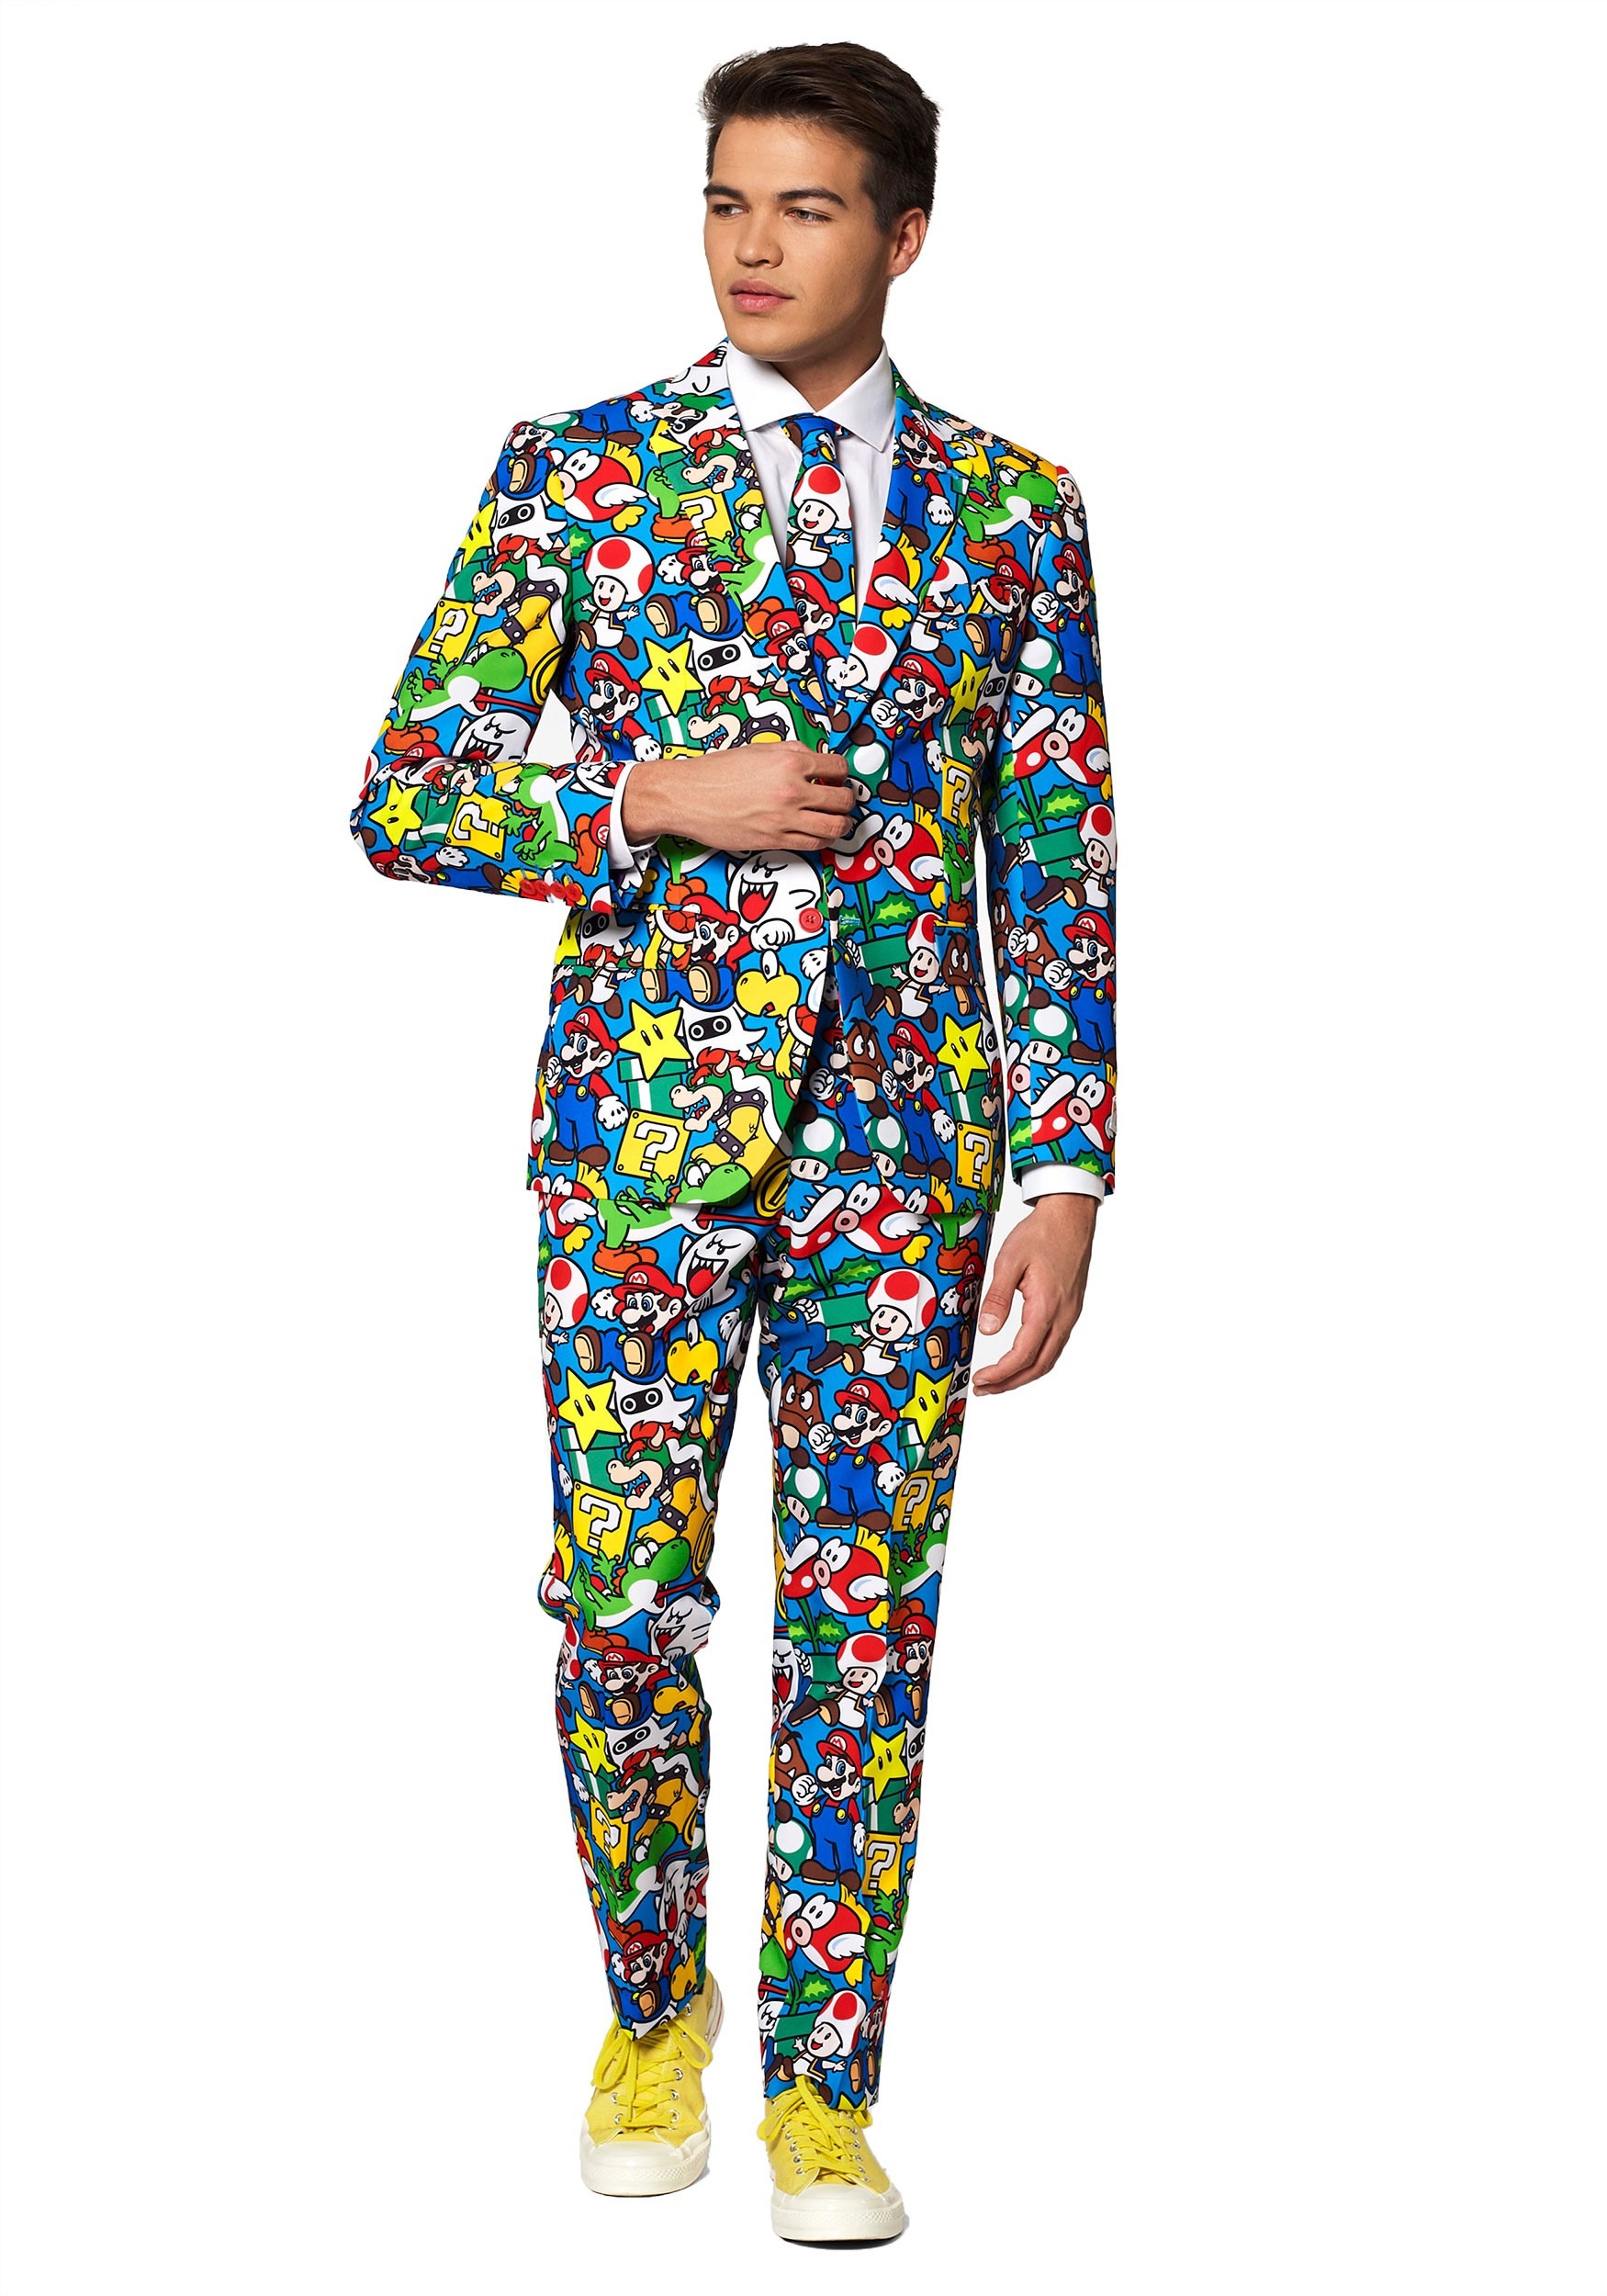 Men’s Opposuit Super Mario Suit